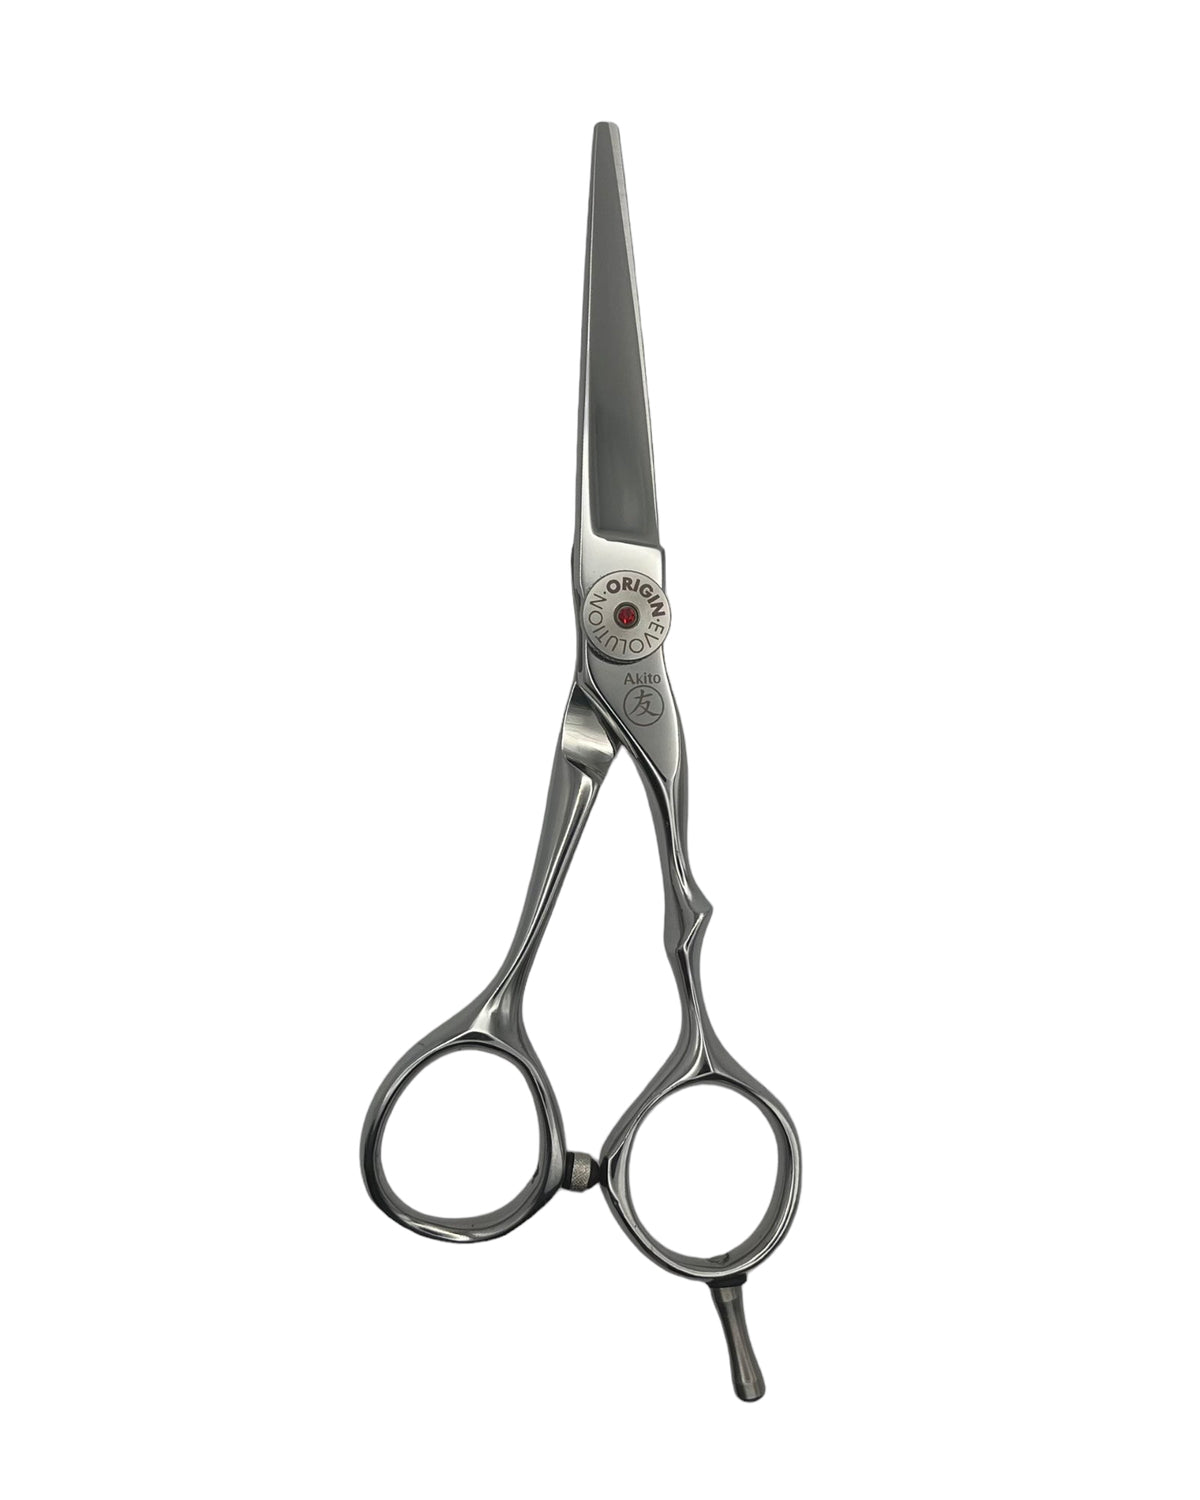 Akito Evolve 5.5 inch scissors